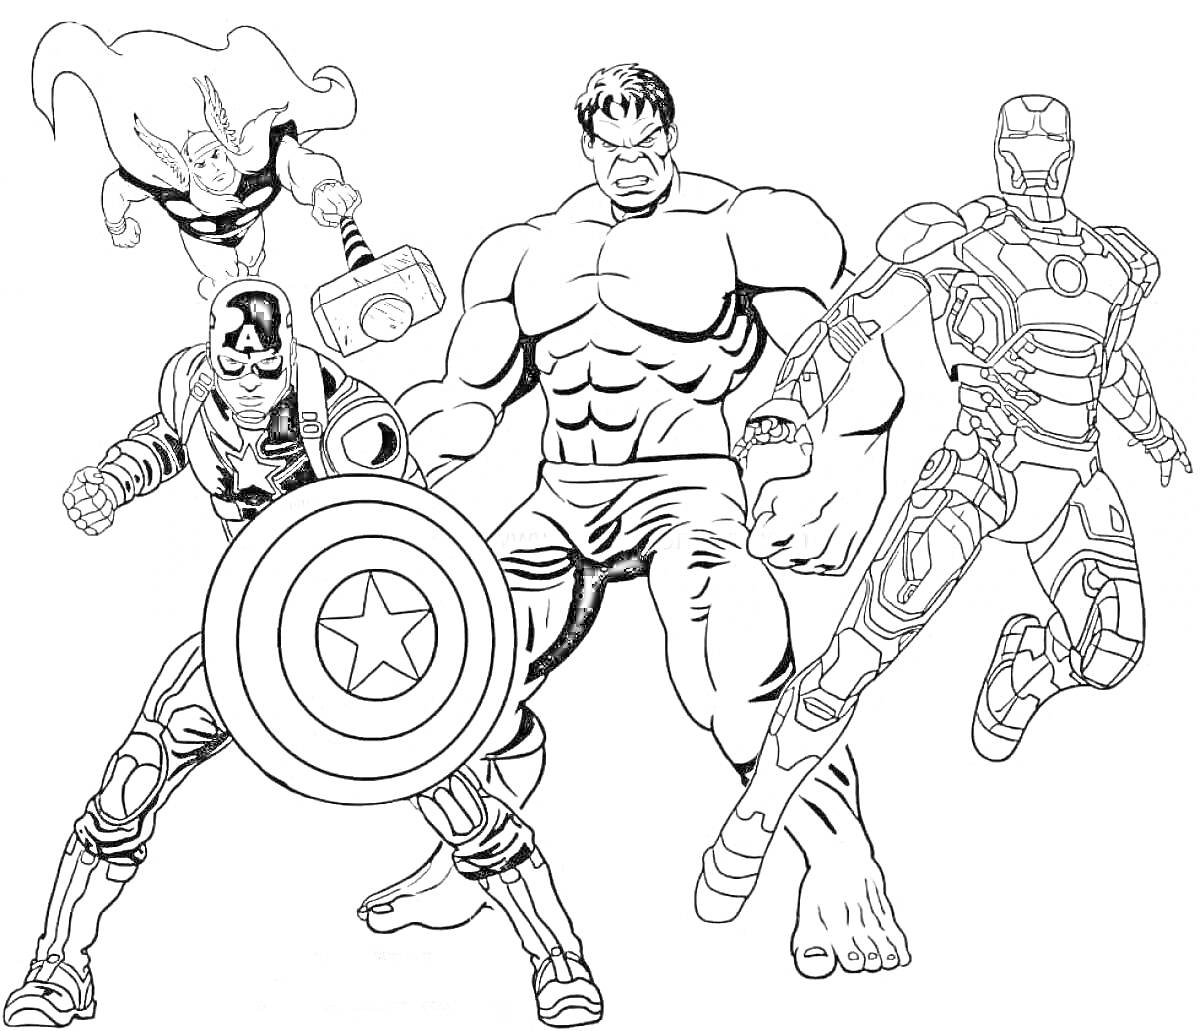 Раскраска Мстители: Тор с молотом, Капитан Америка со щитом, Халк в центре, Железный человек